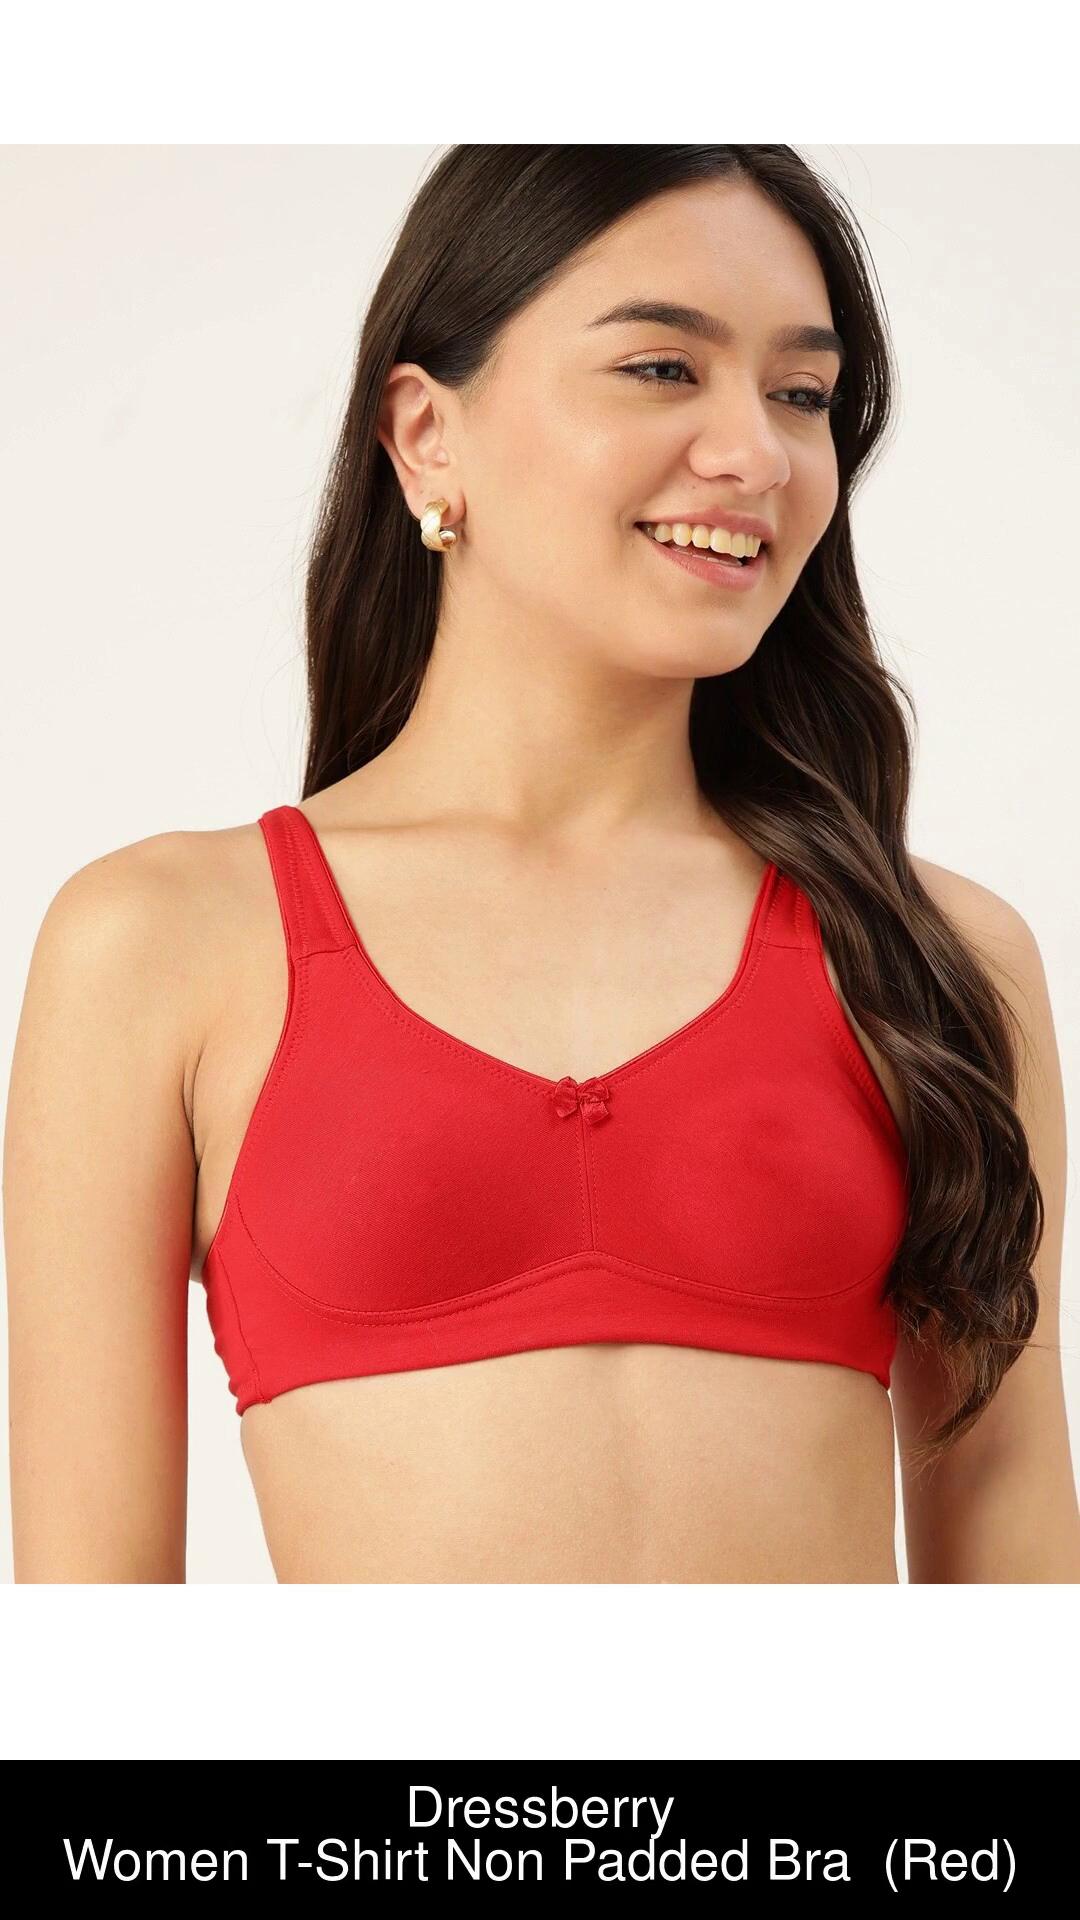 Buy Dressberry Women T-Shirt Non Padded Bra Online at Best